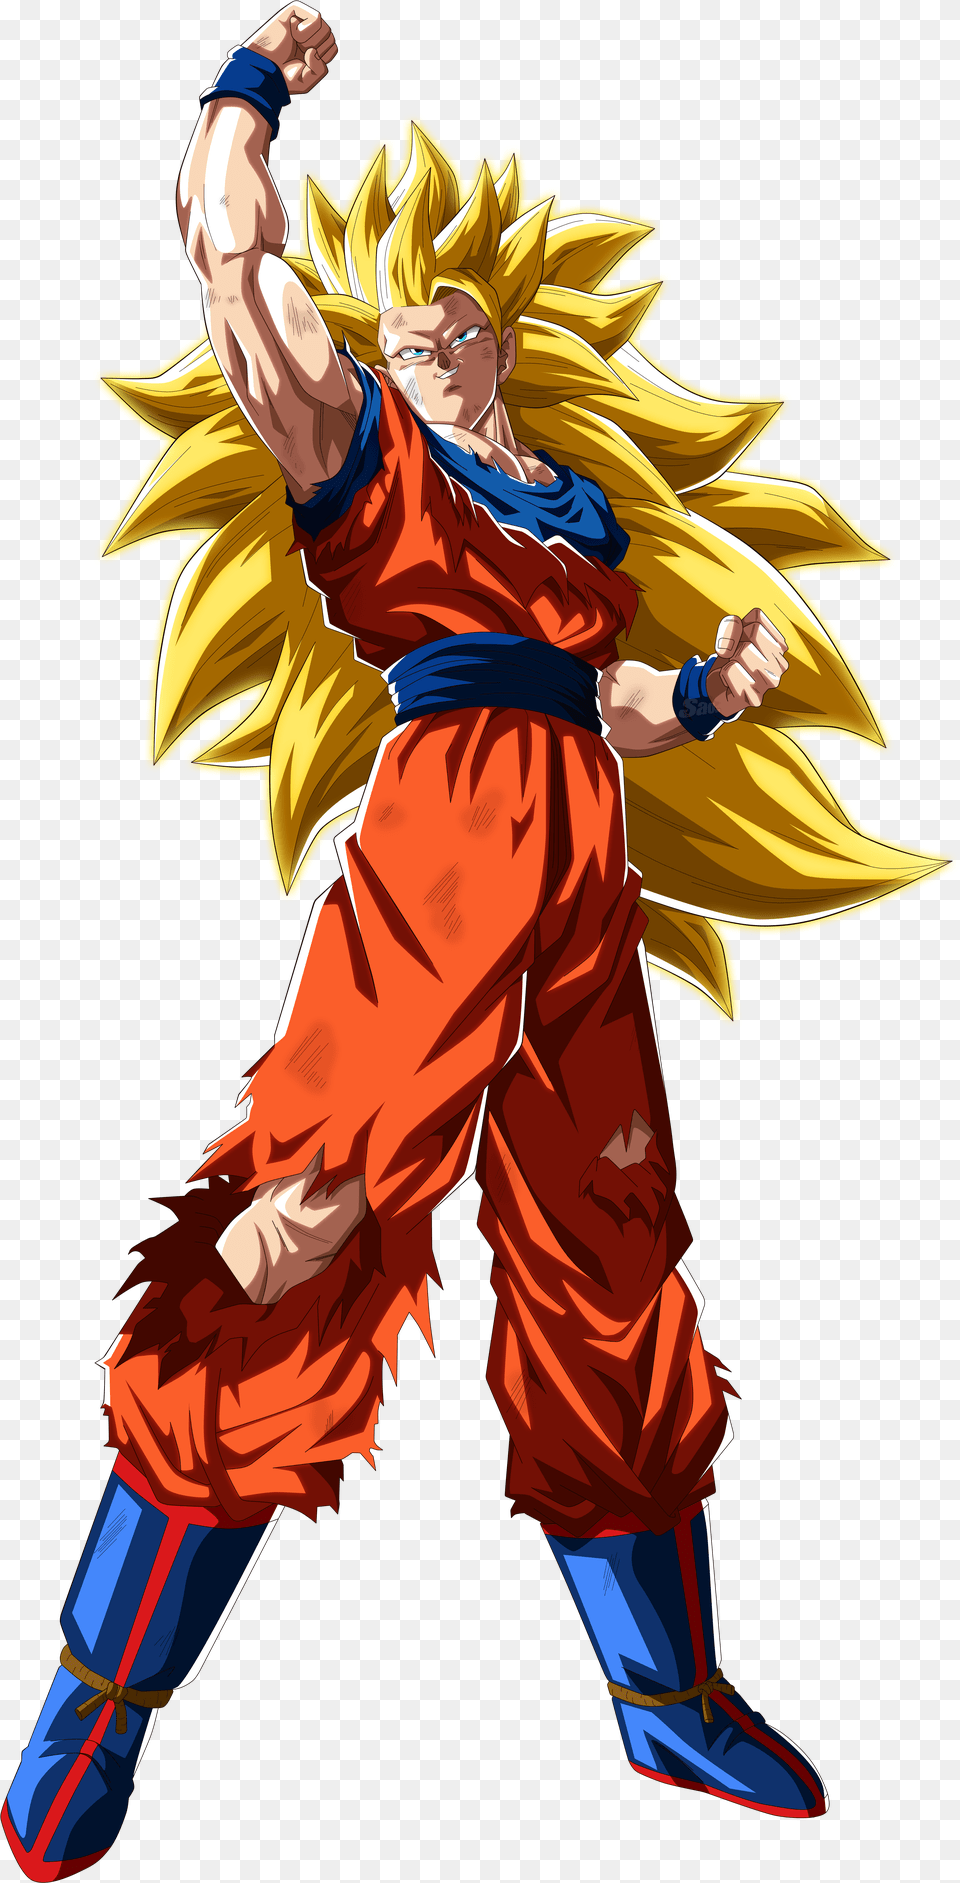 Desenhando Personagens De Dragon Ball Do Goku Super Sayajin, Gray Png Image